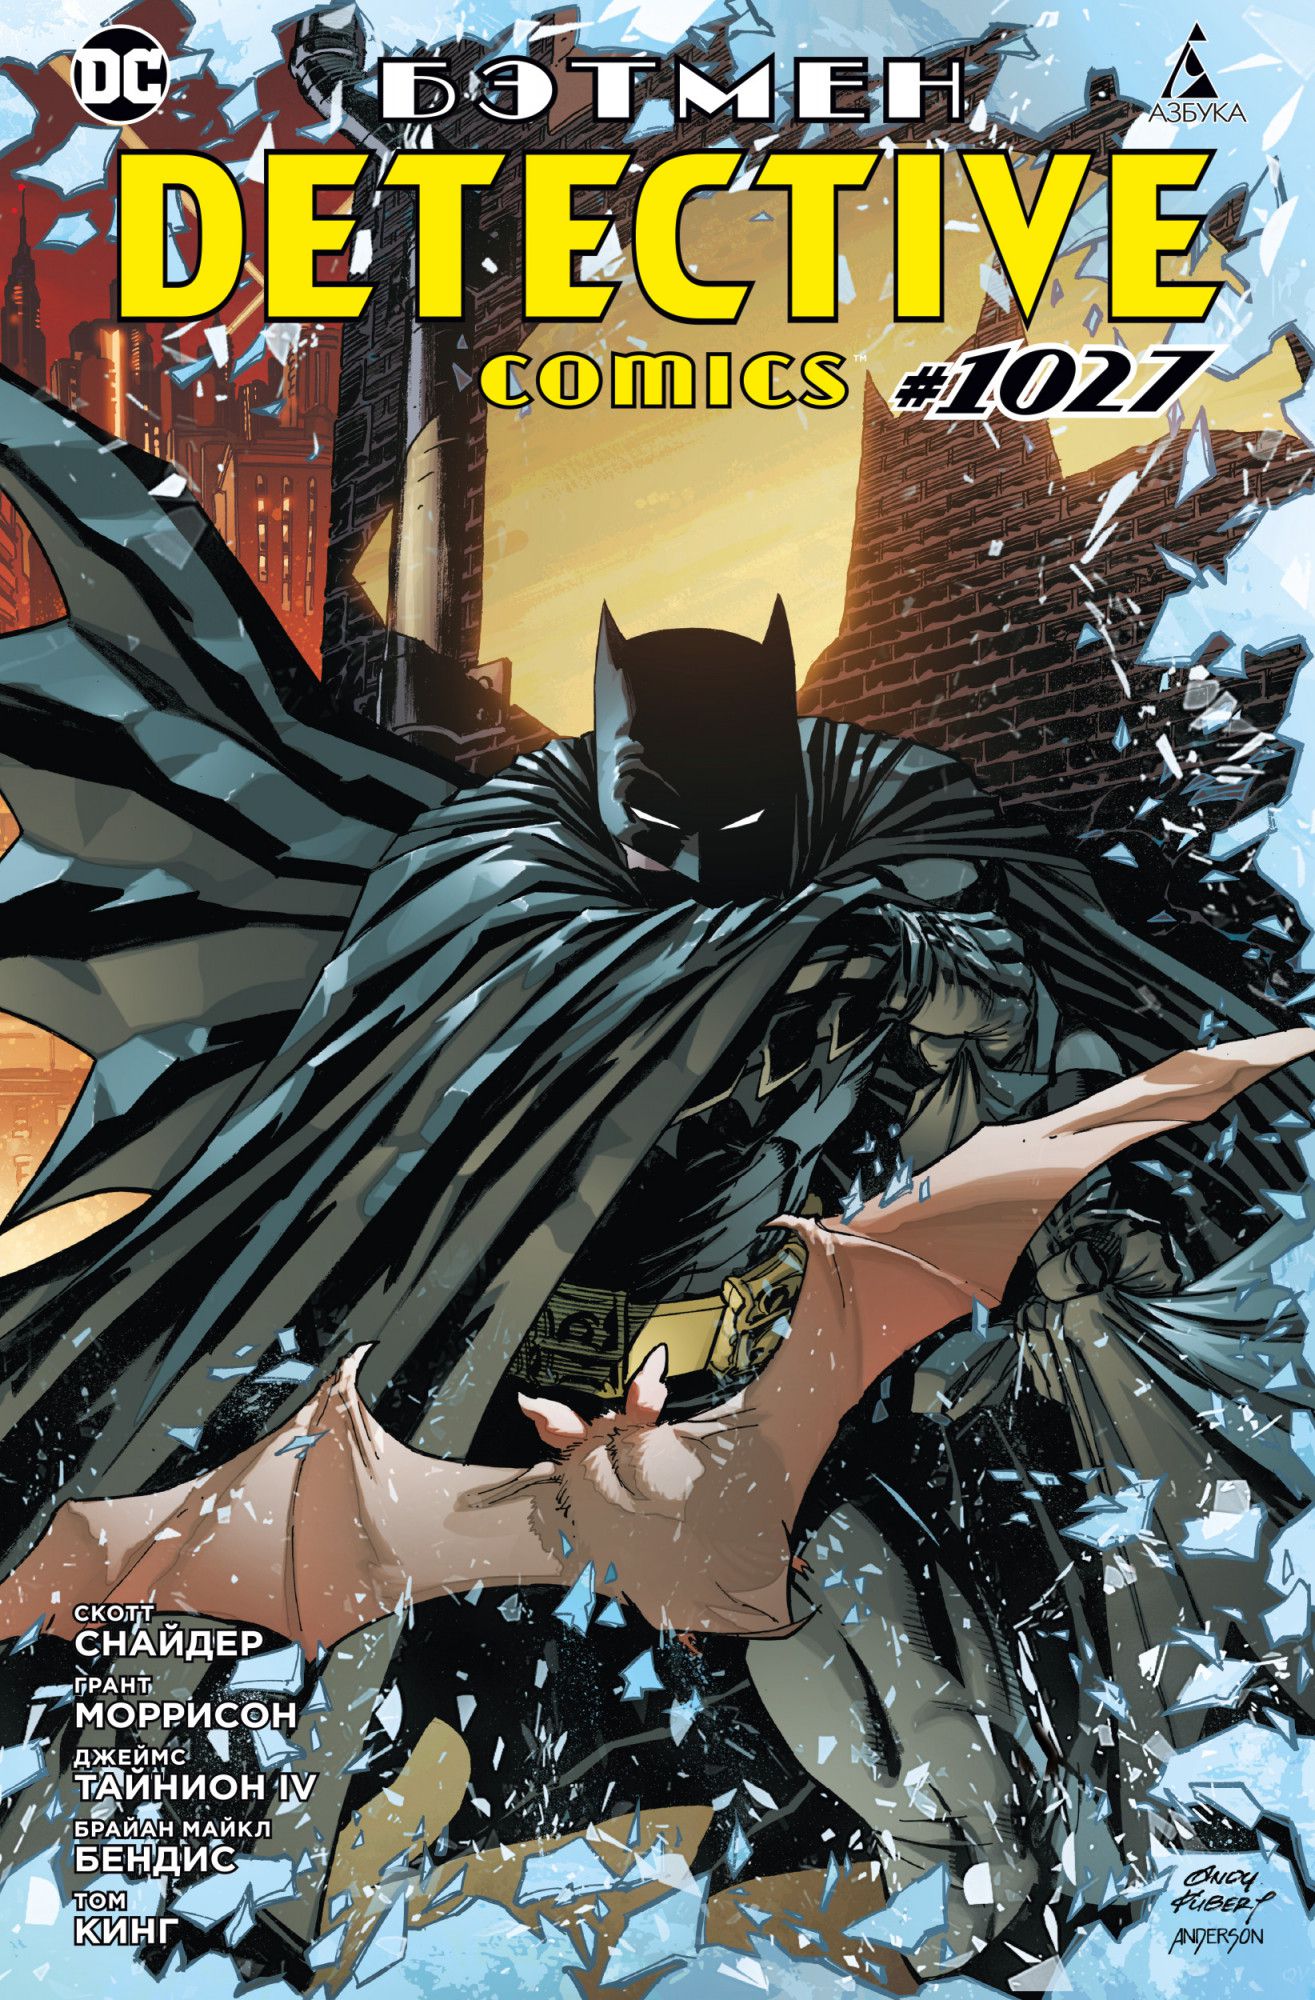 Комикс Бэтмен: Detective comics #1027 (мягкая обложка) от 1С Интерес